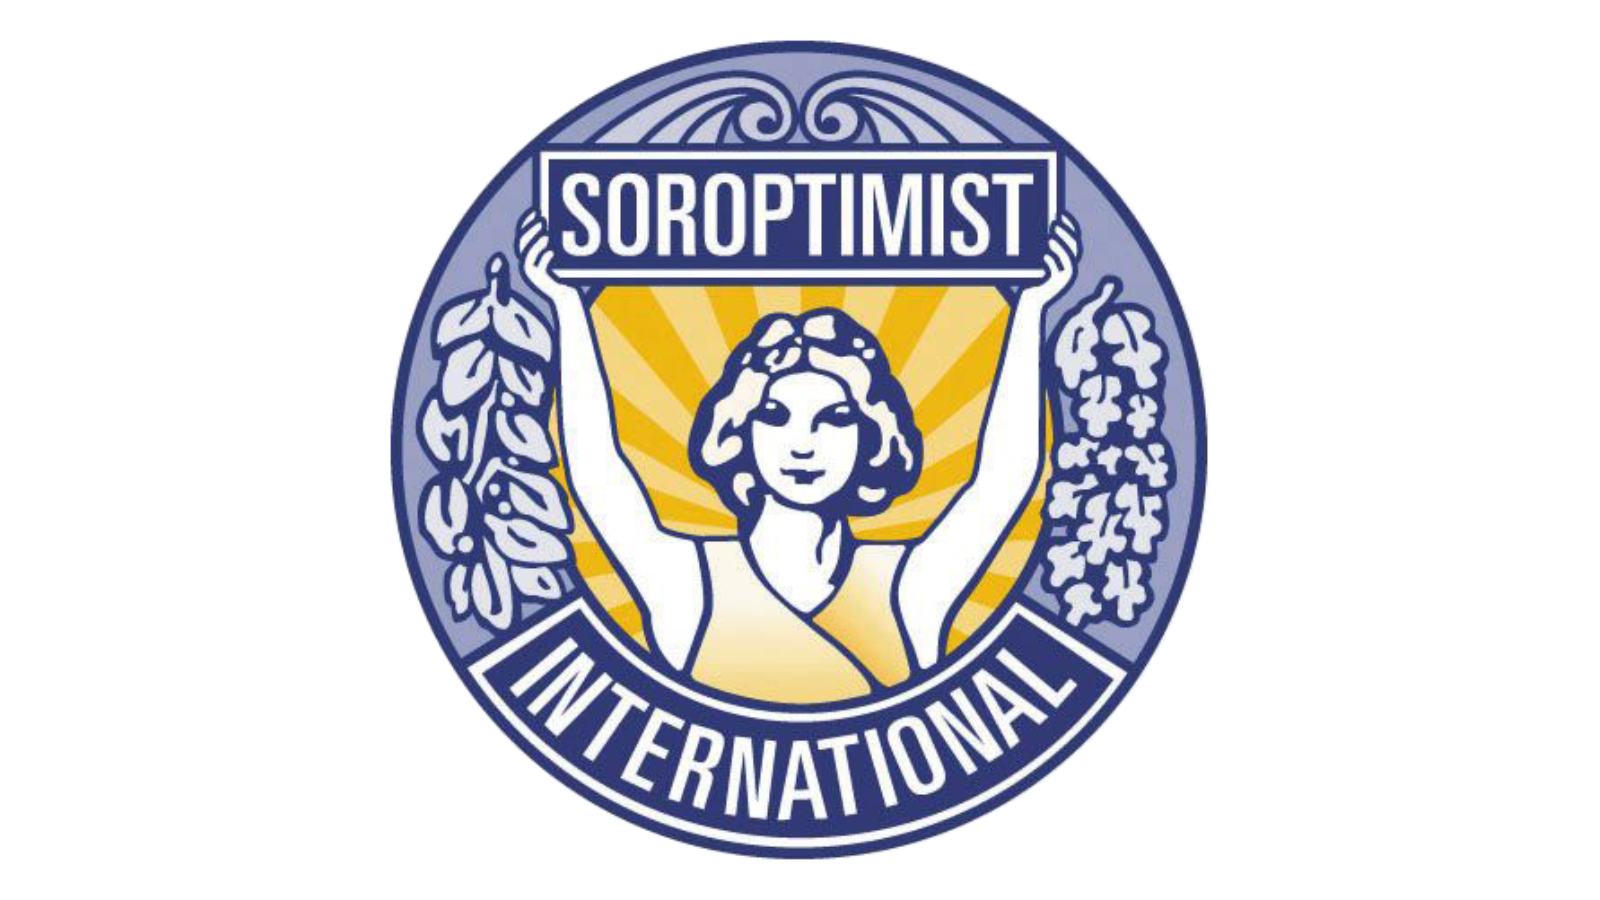 Soroptimist International, Herning